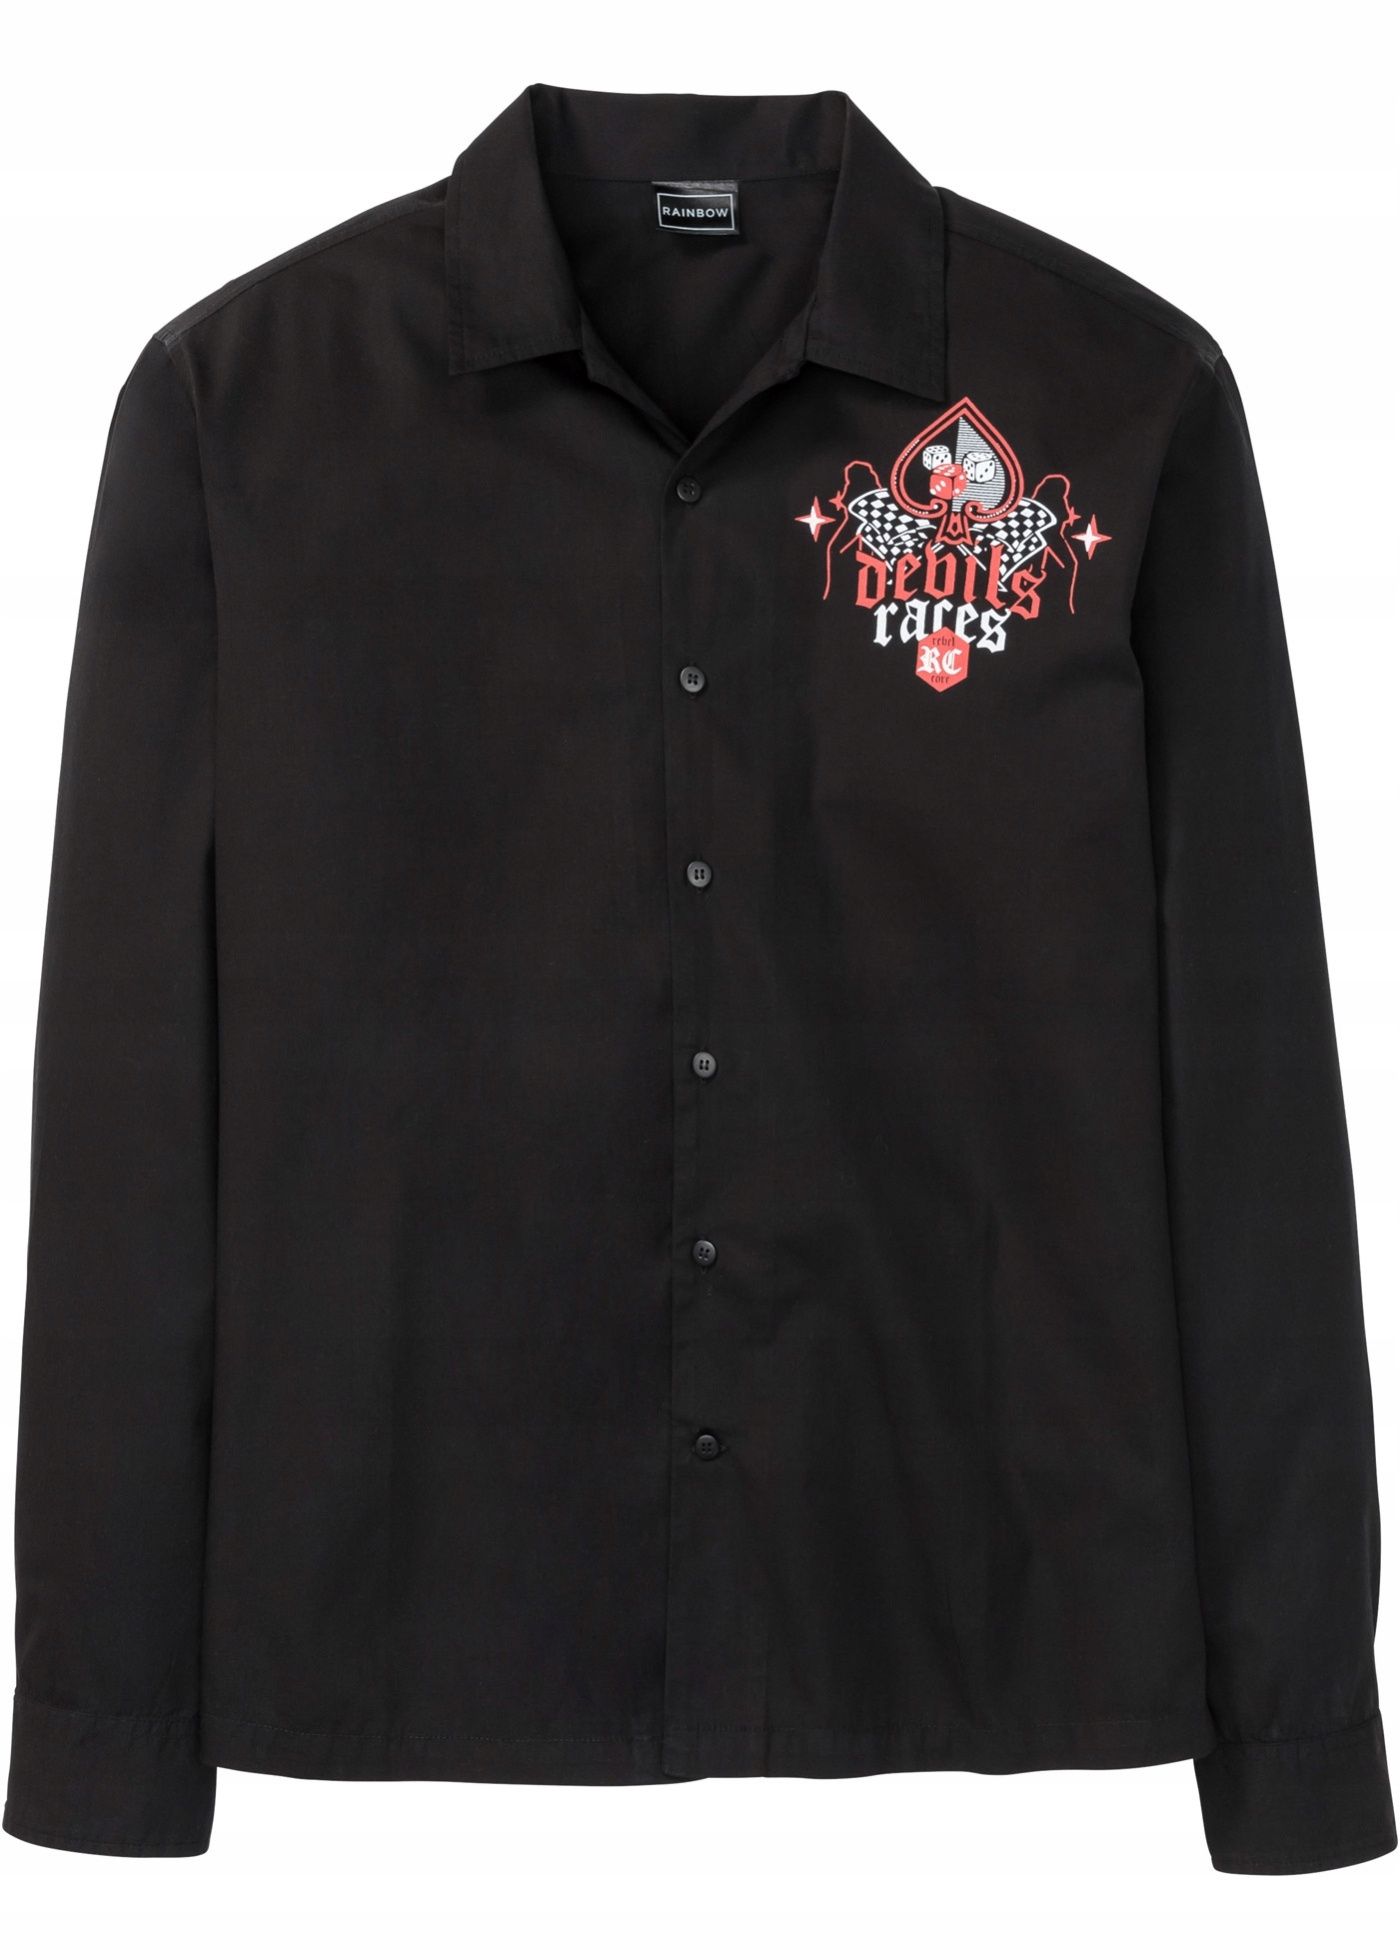 B.P.C czarna męska koszula z nadrukiem 43/44.